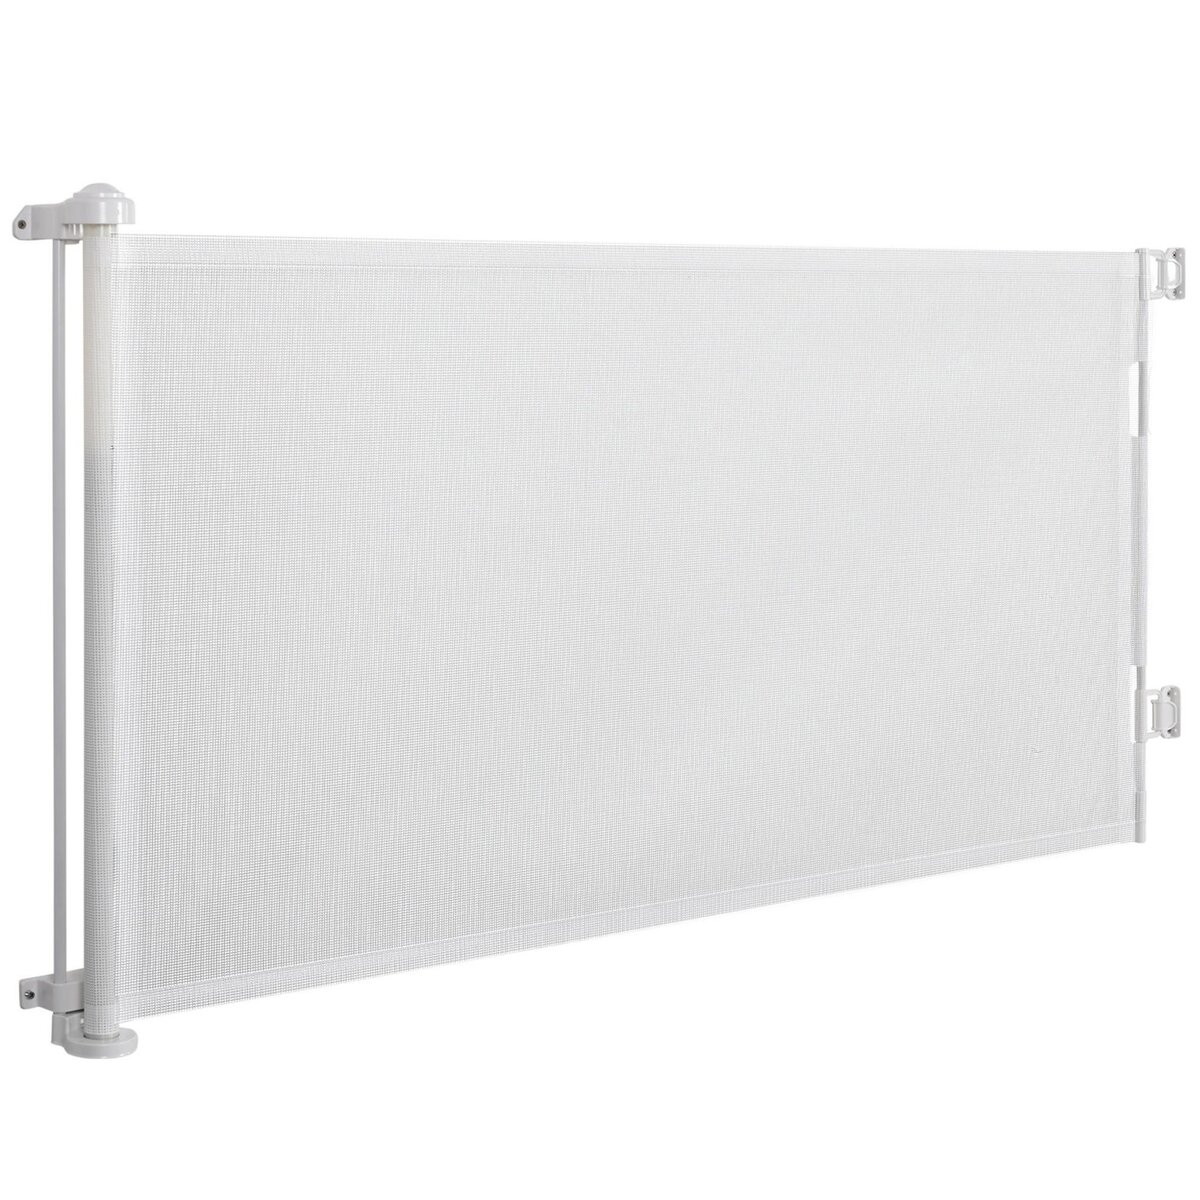 PAWHUT Barrière de sécurité barrière animaux rétractable automatique 1,65L x 0,85H m teslin alu. PVC blanc